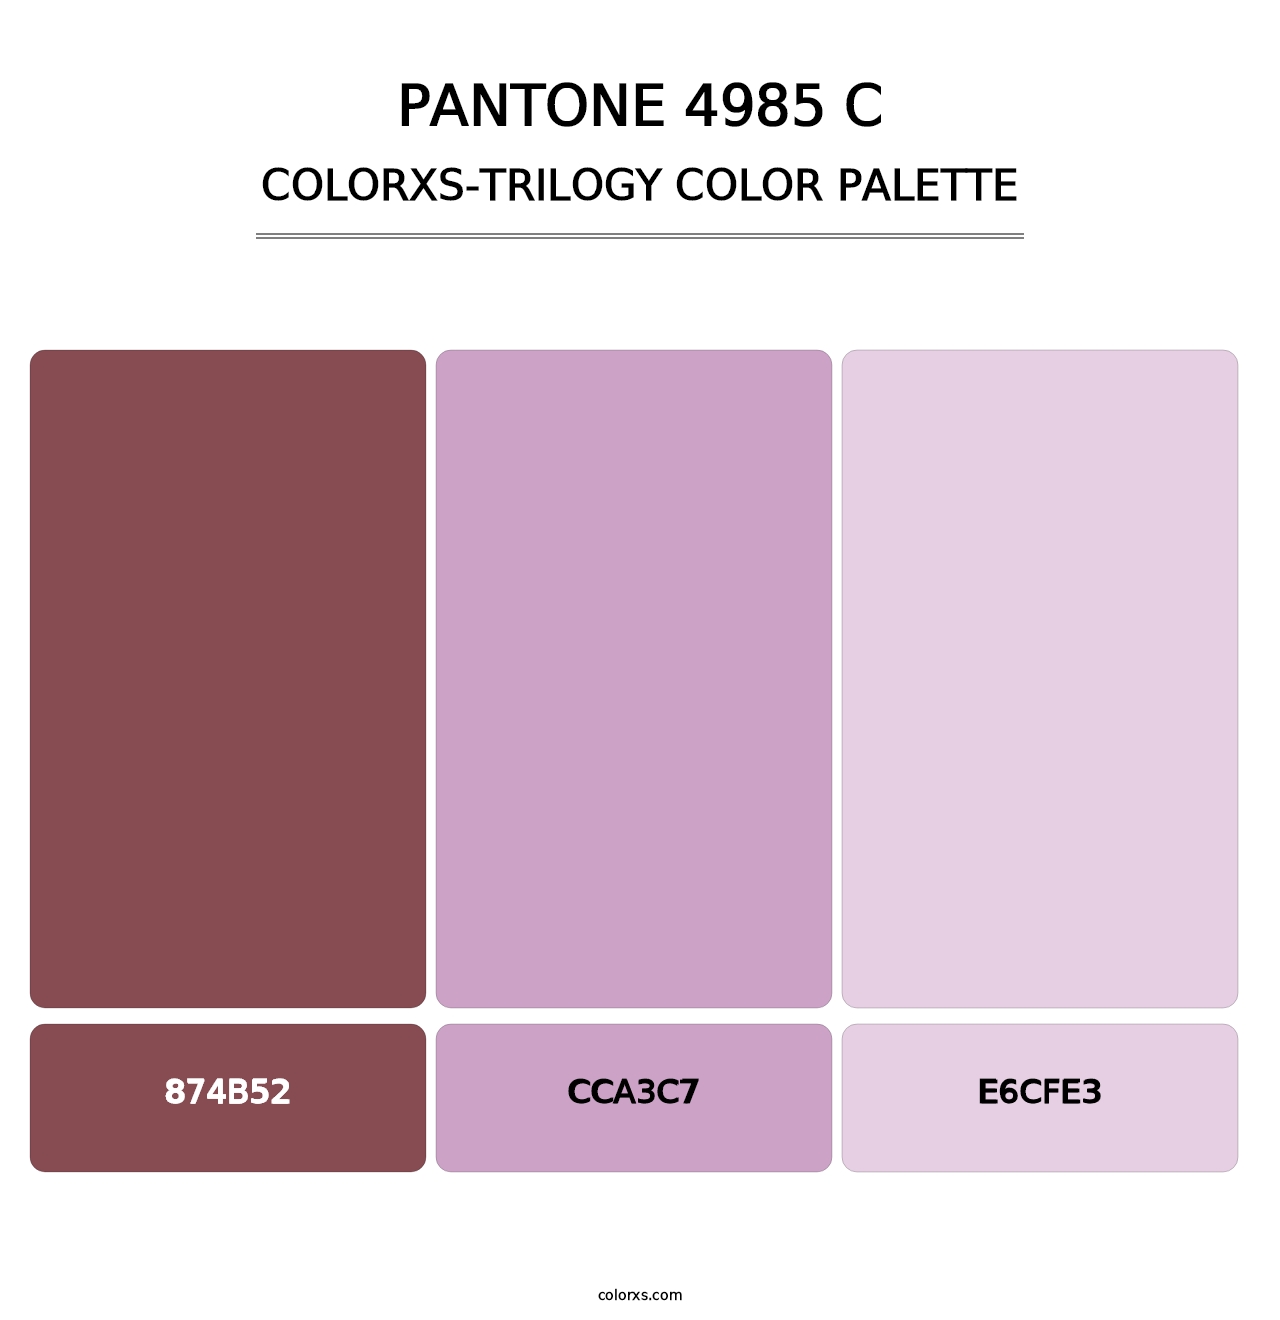 PANTONE 4985 C - Colorxs Trilogy Palette